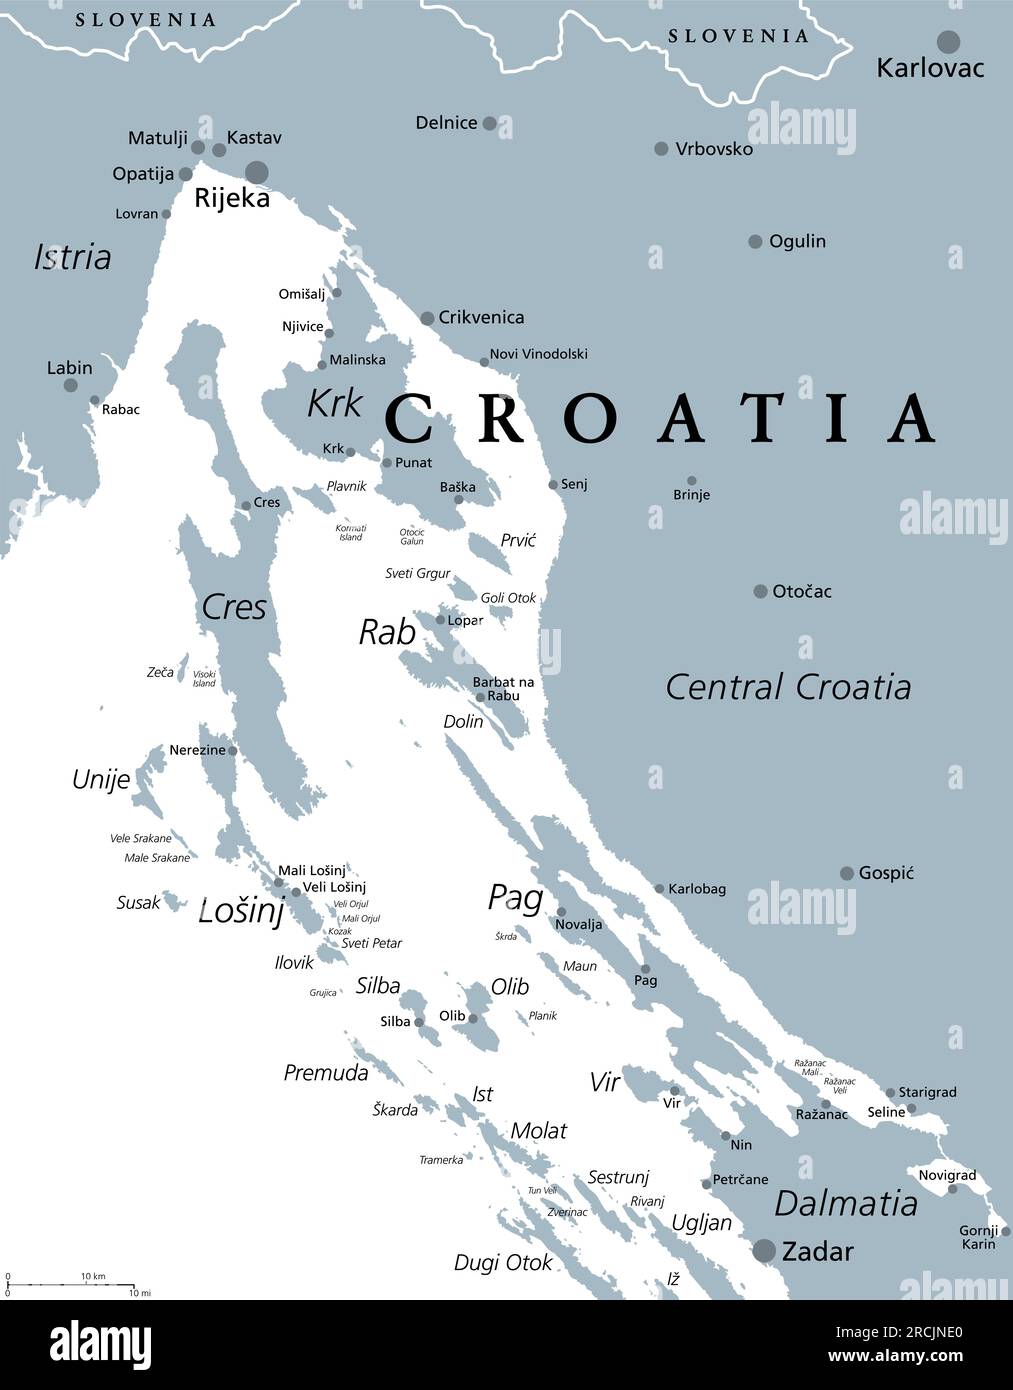 Kvarner Golf, Teil der inneren Gewässer Kroatiens, graue politische Karte. Die Kvarner-Bucht in der nördlichen Adria zwischen Istrien und Zentralkroatien. Stockfoto